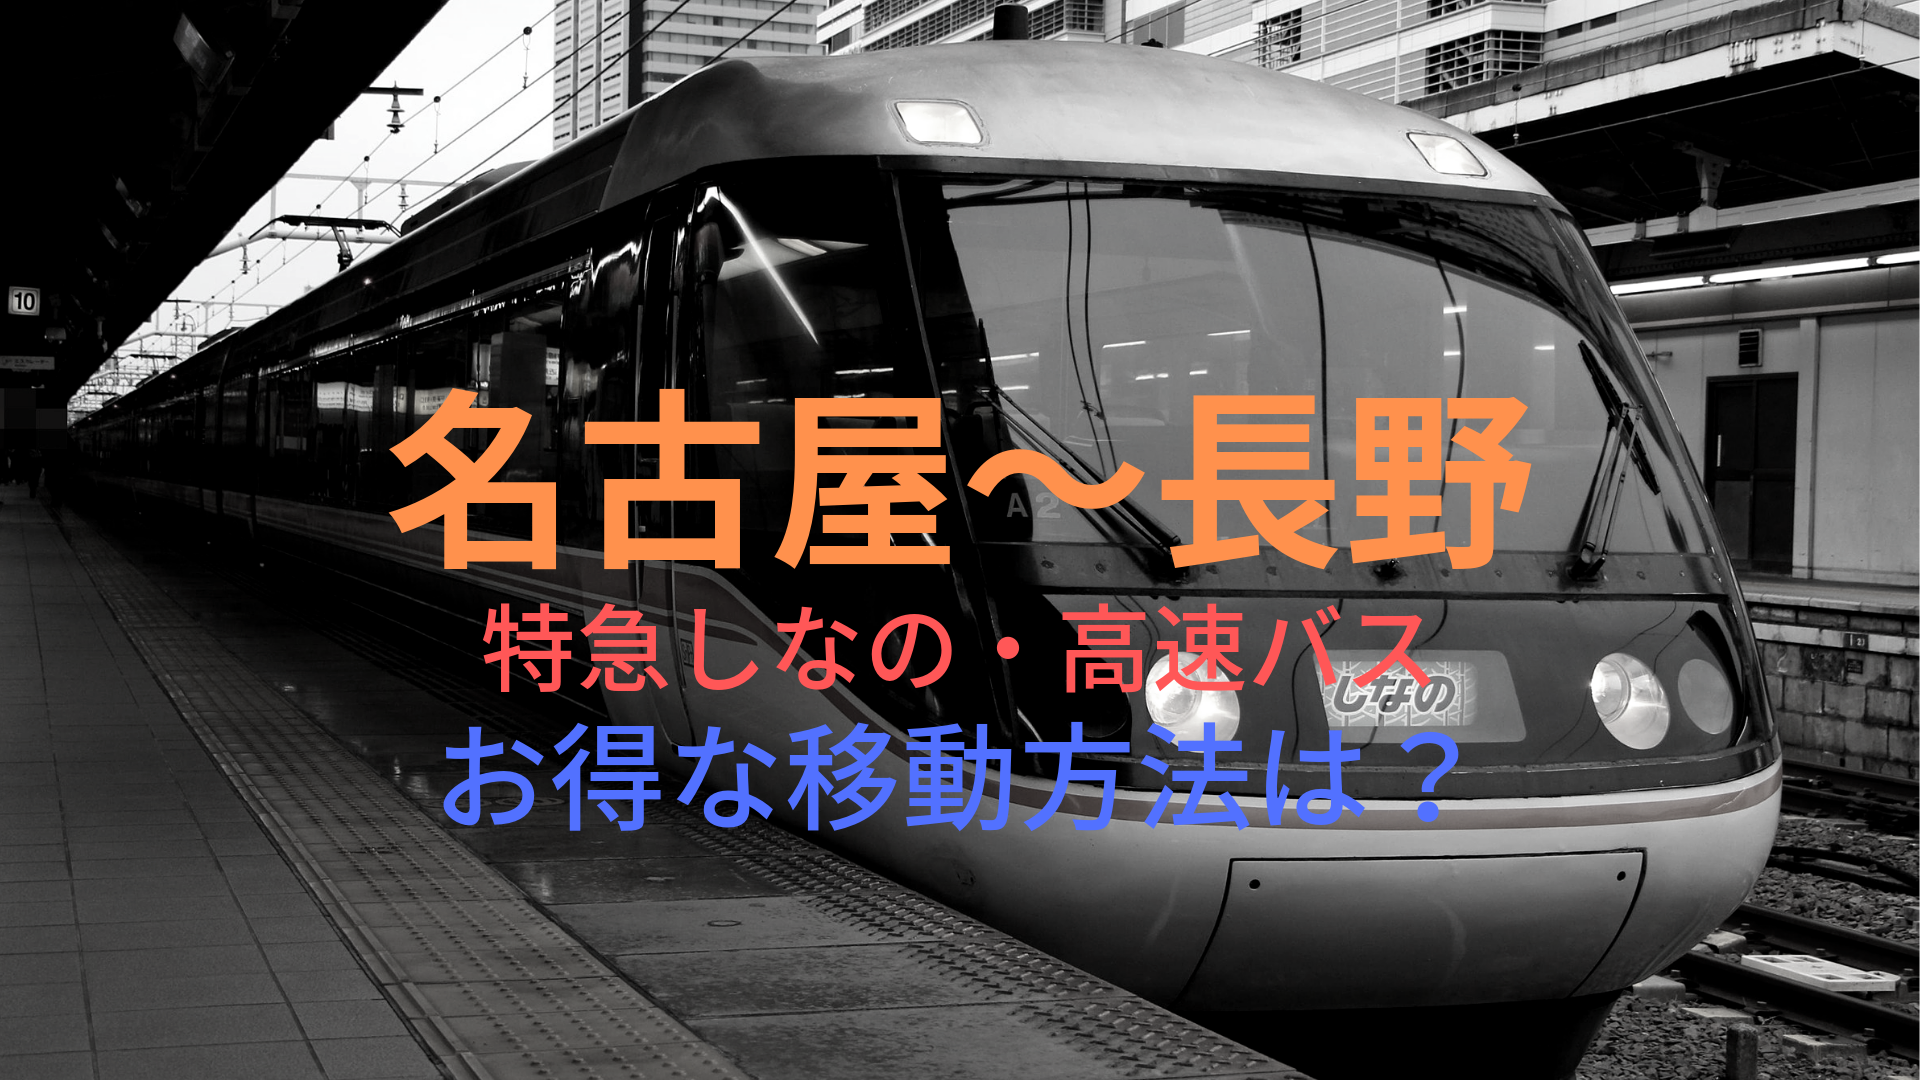 名古屋 長野 3800円 格安で移動する方法は 特急しなの 高速バスをそれぞれ比較 ばしたく交通